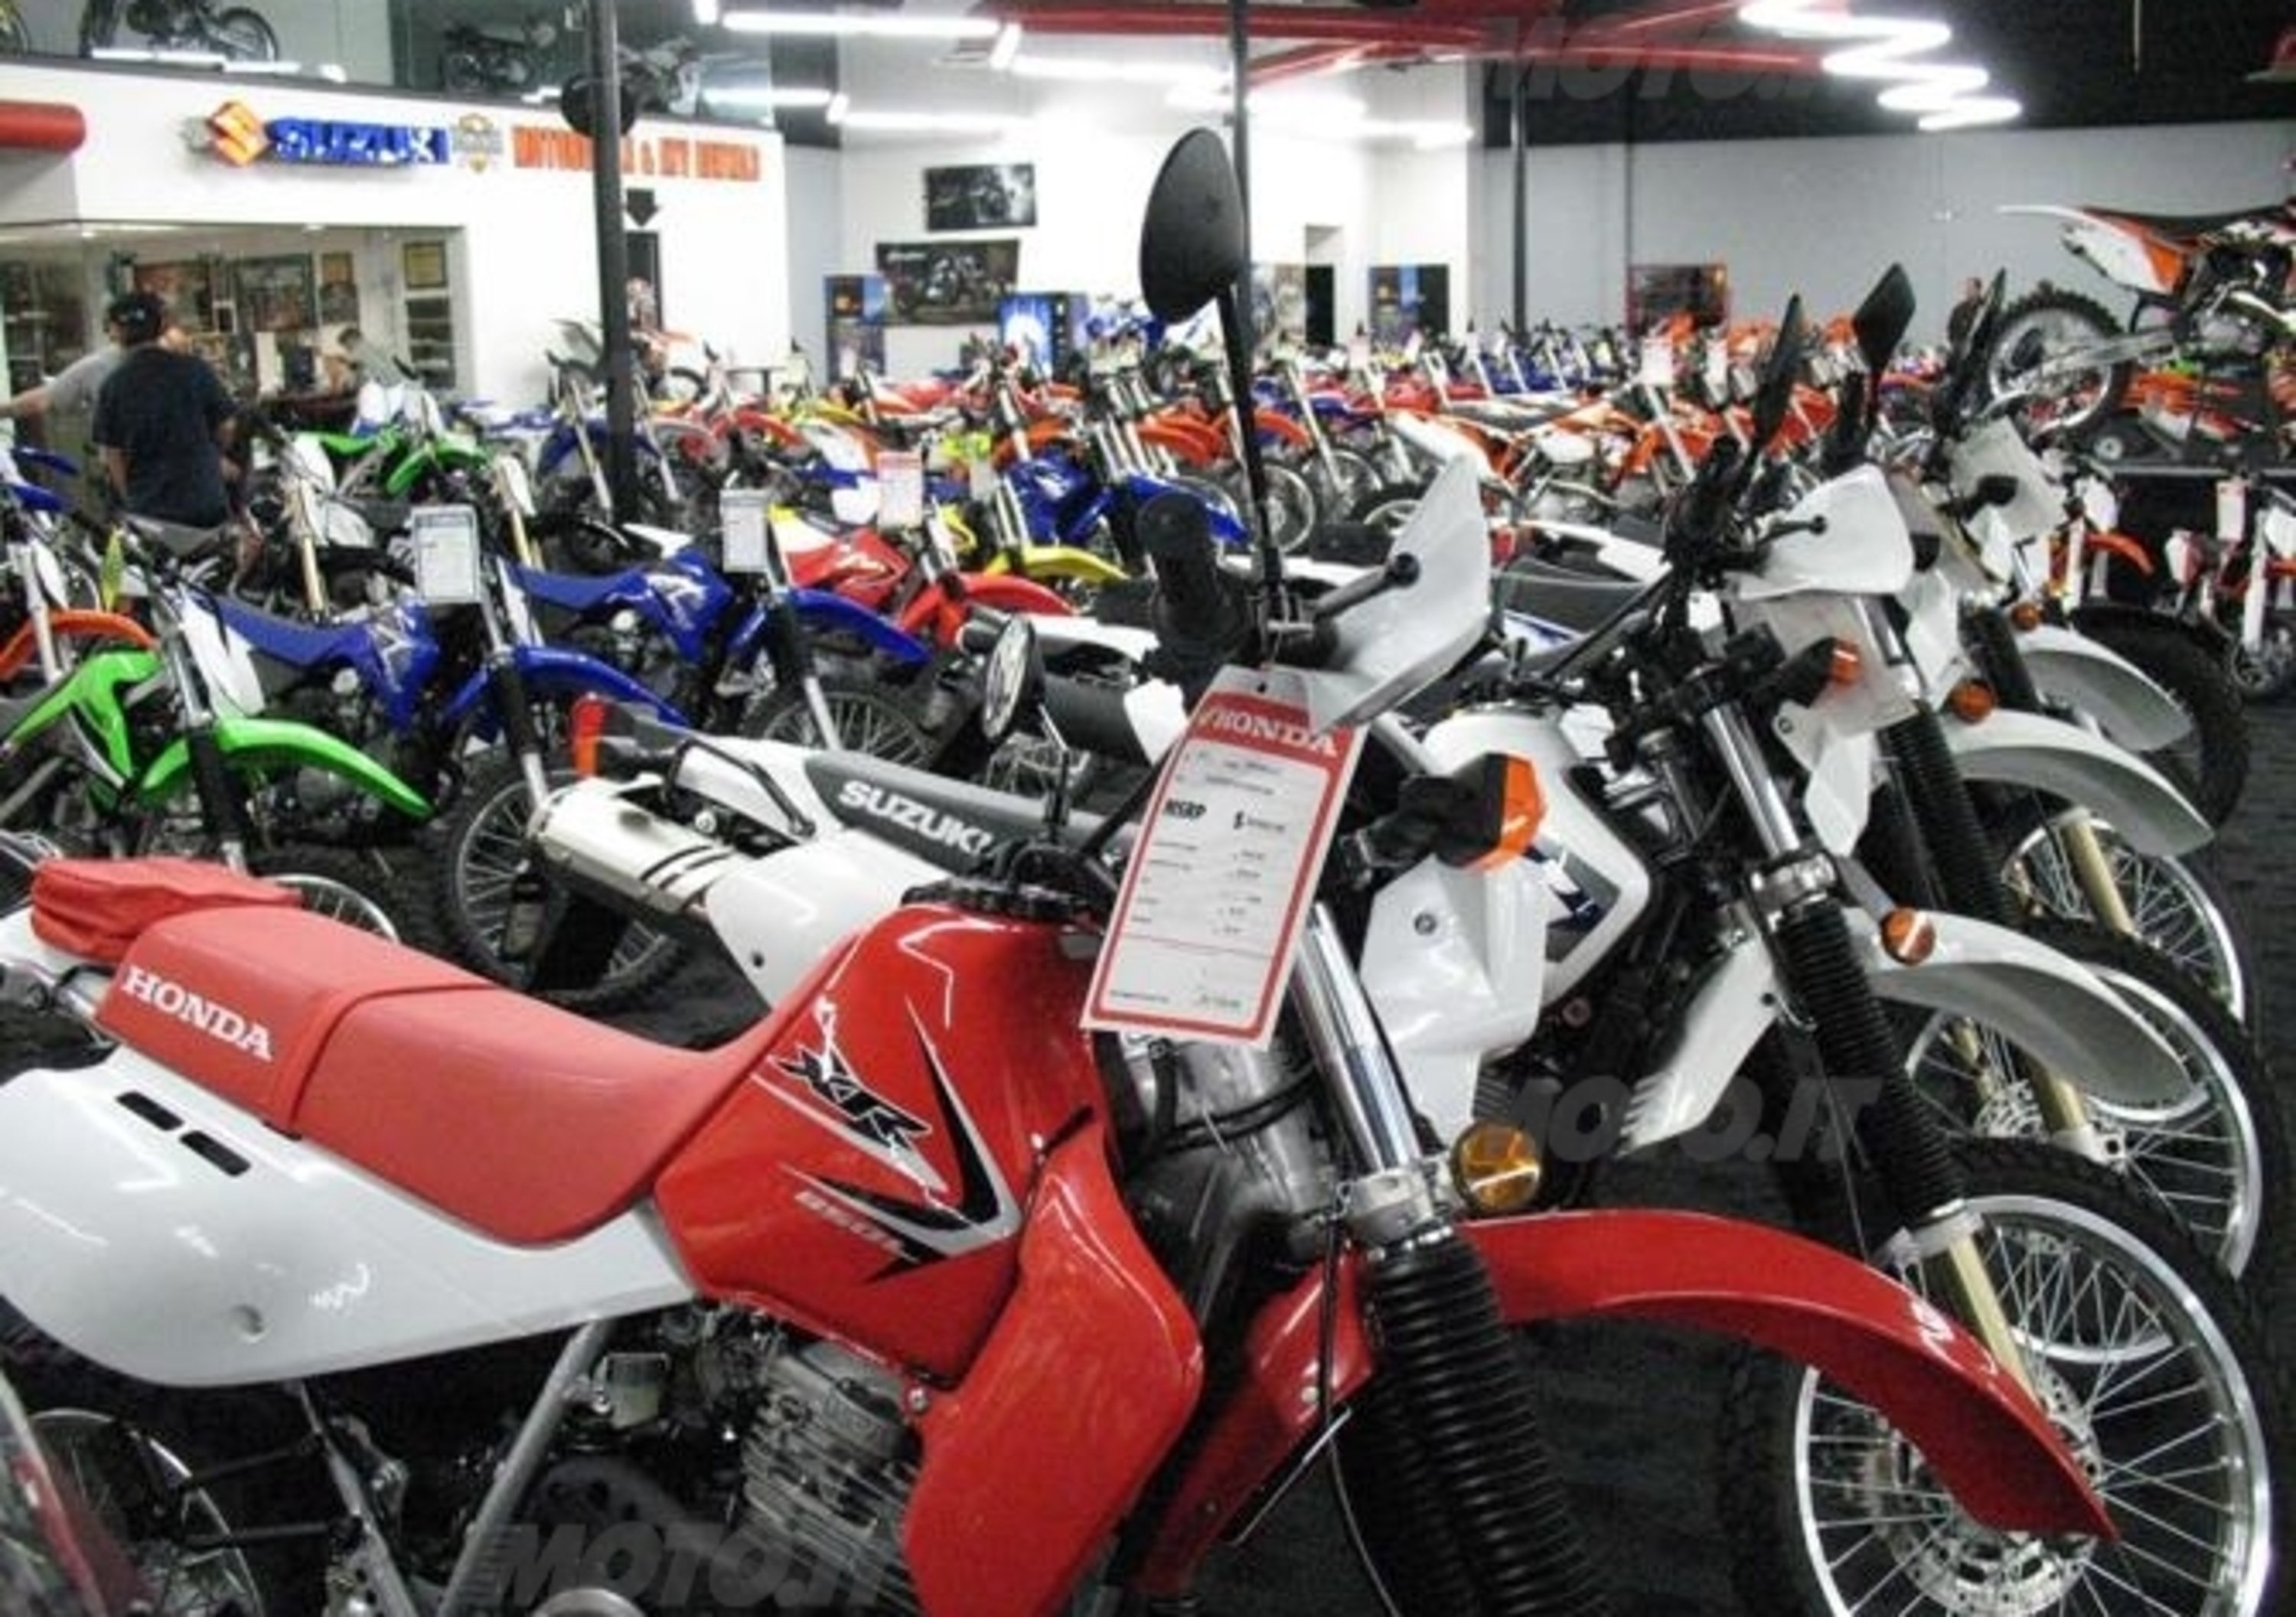 Chaparral Motorsports. Il negozio moto e accessori pi&ugrave; grande del mondo